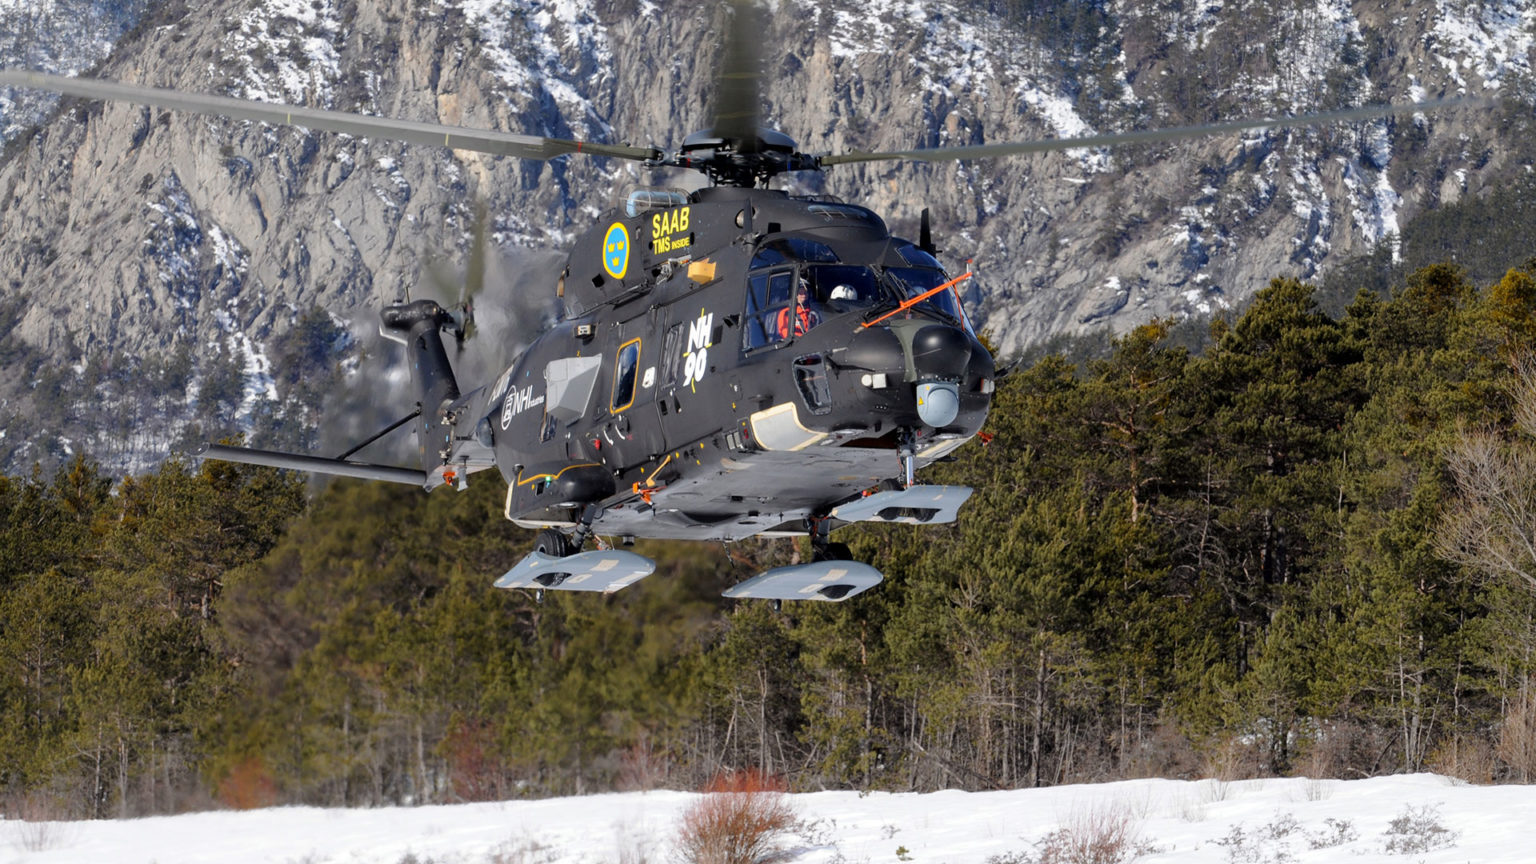 NH90 Ski im Einsatz